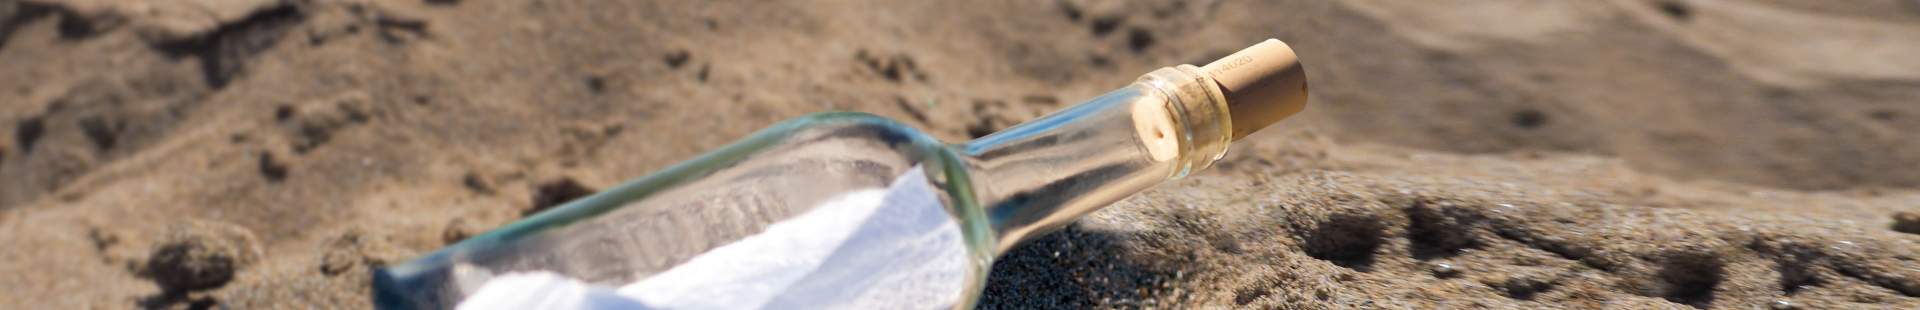 VRK Änderungsmitteilung – Eine angespülte Flaschenpost am Strand im Sand.